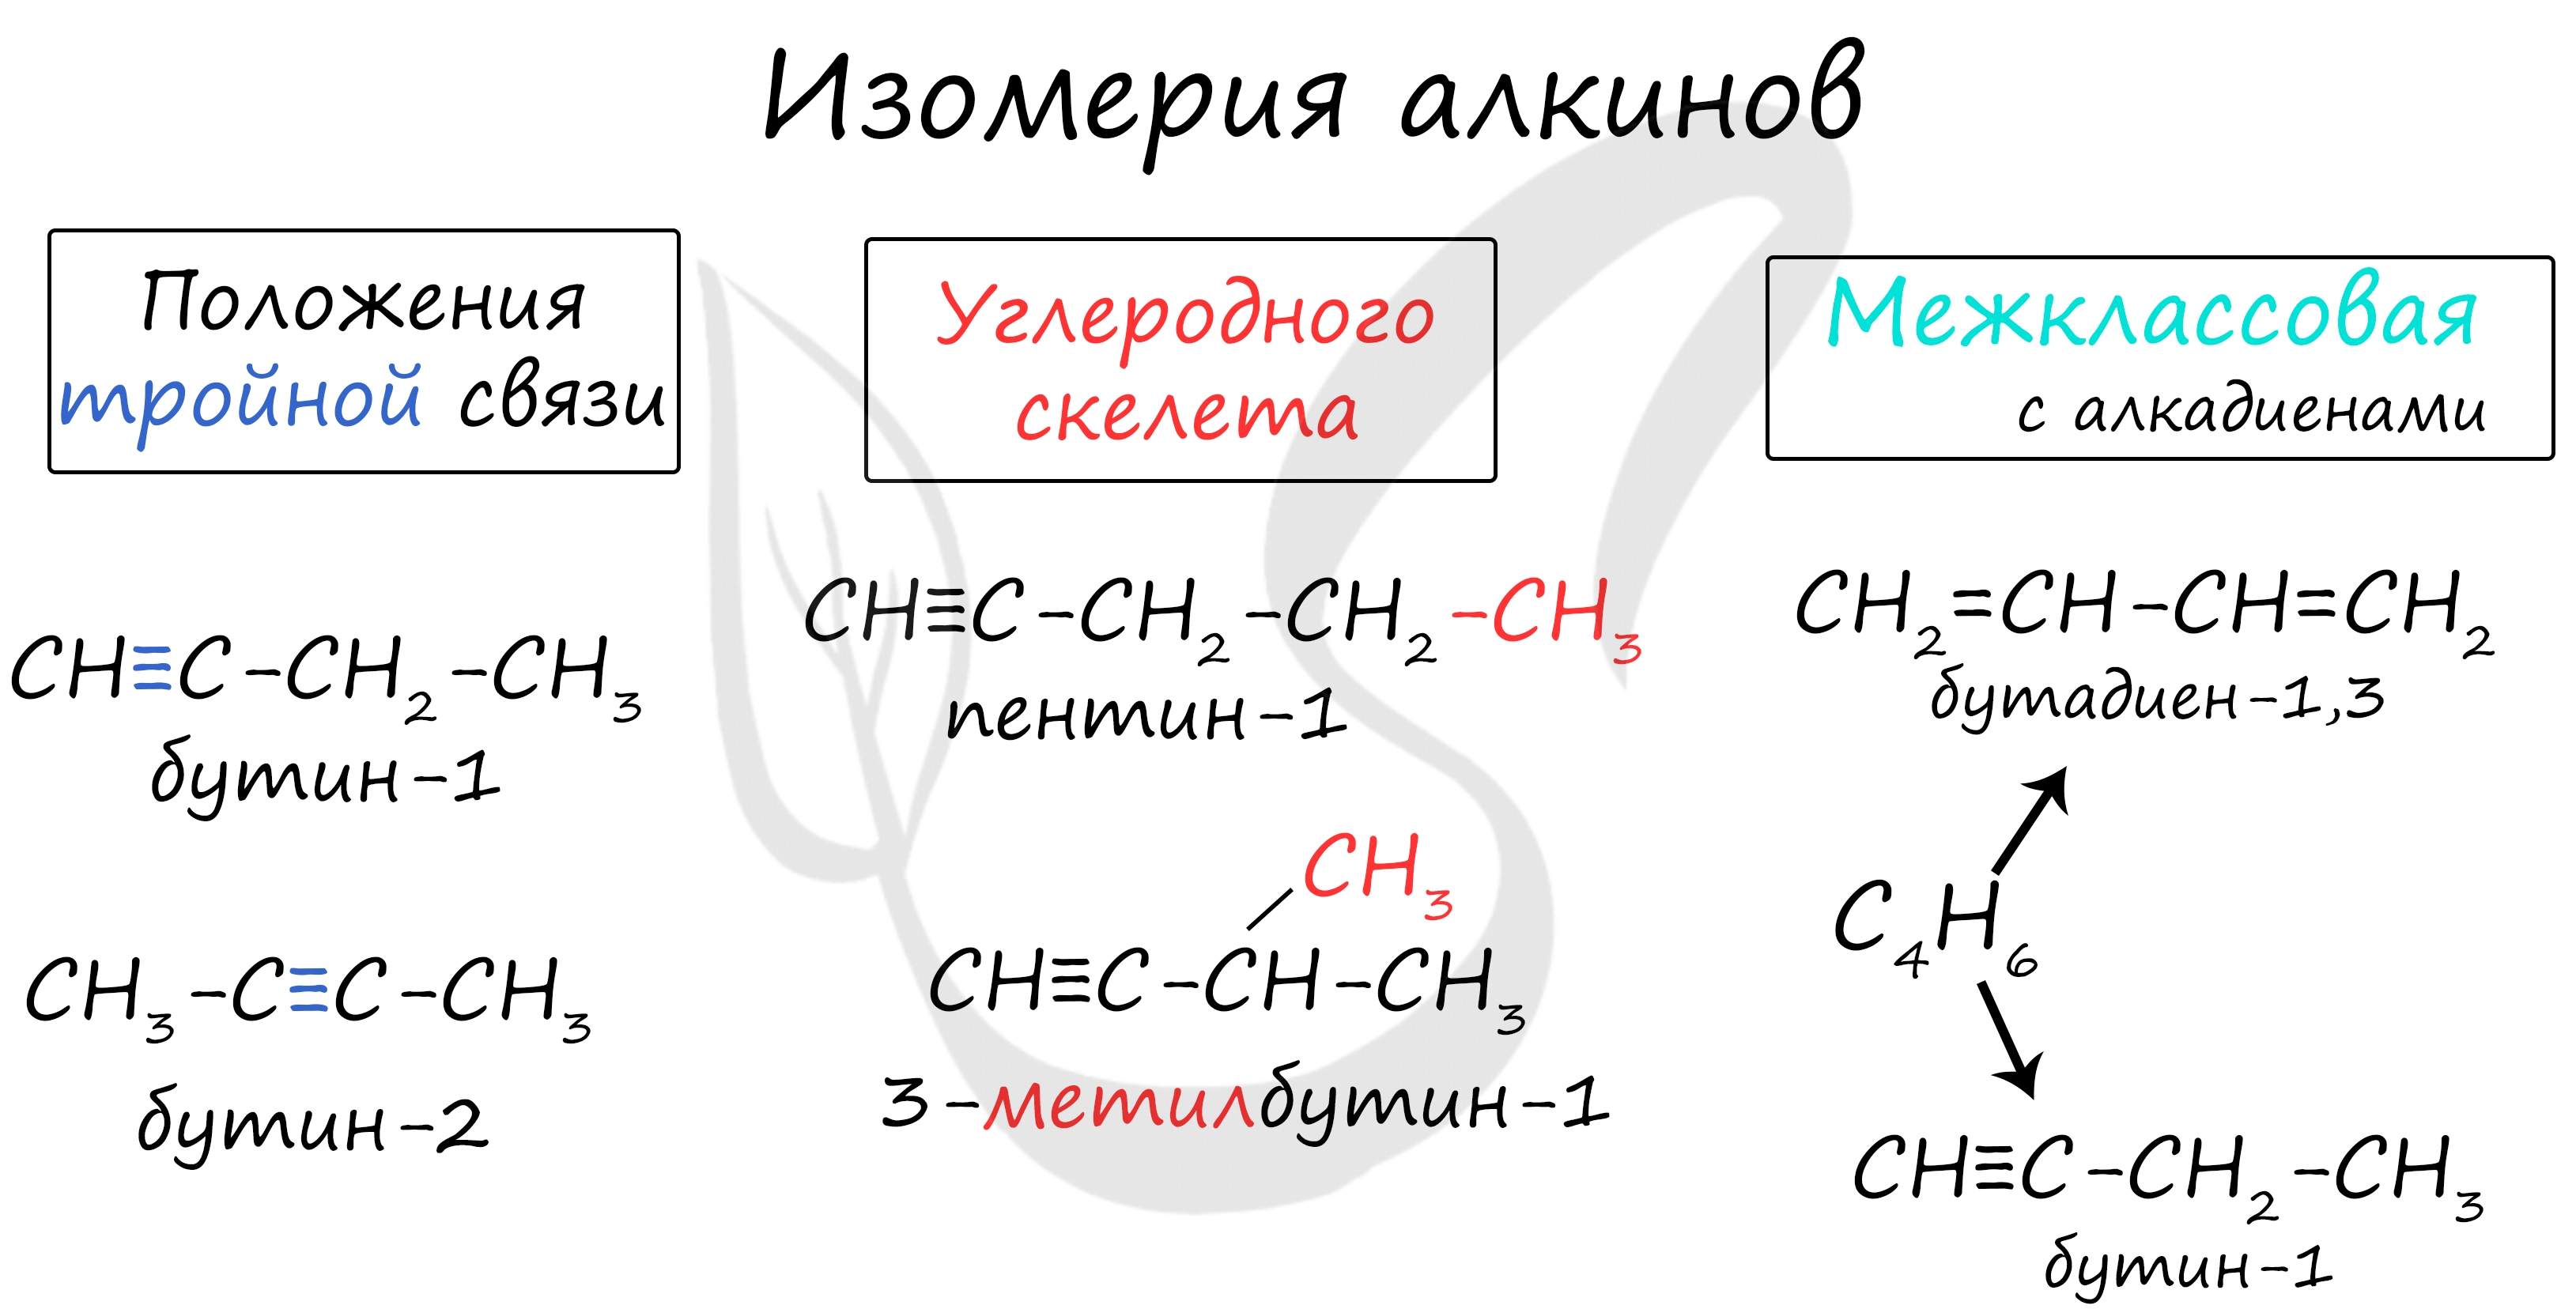 Физические и химические свойства алкадиенов